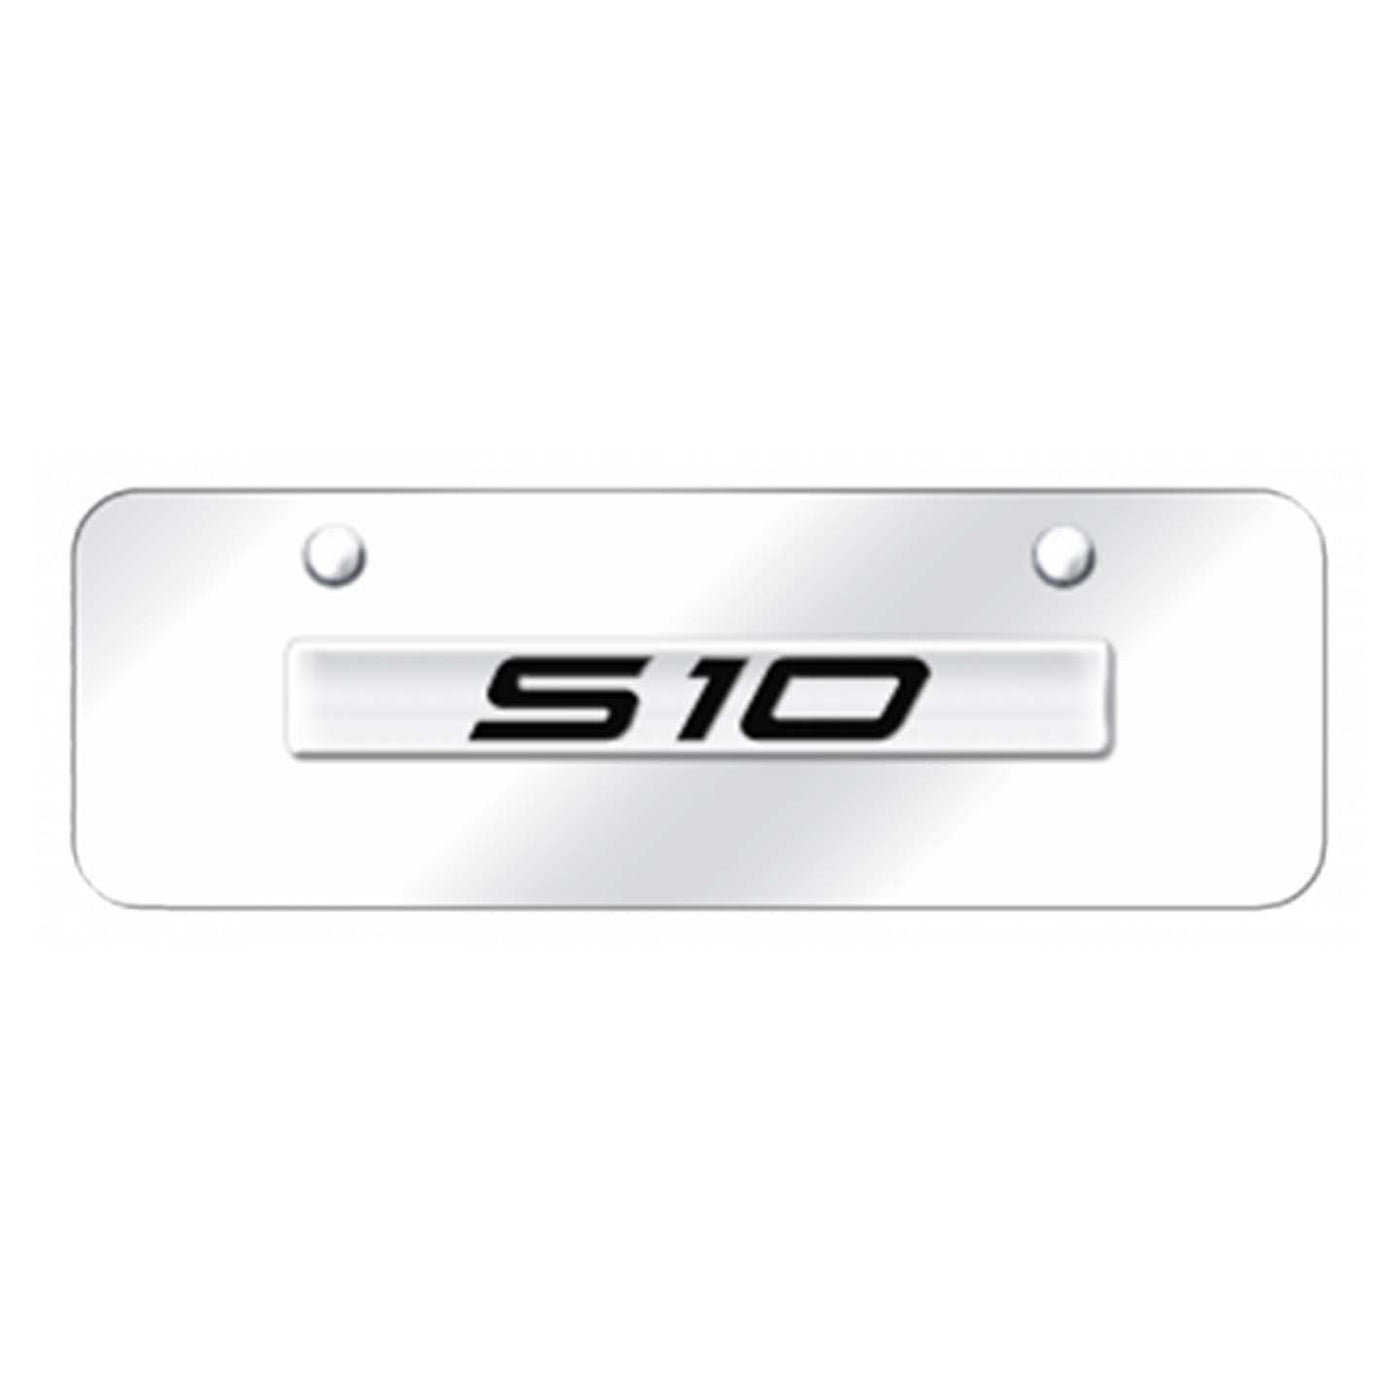 S-10 Name Mini Plate - Chrome on Mirrored